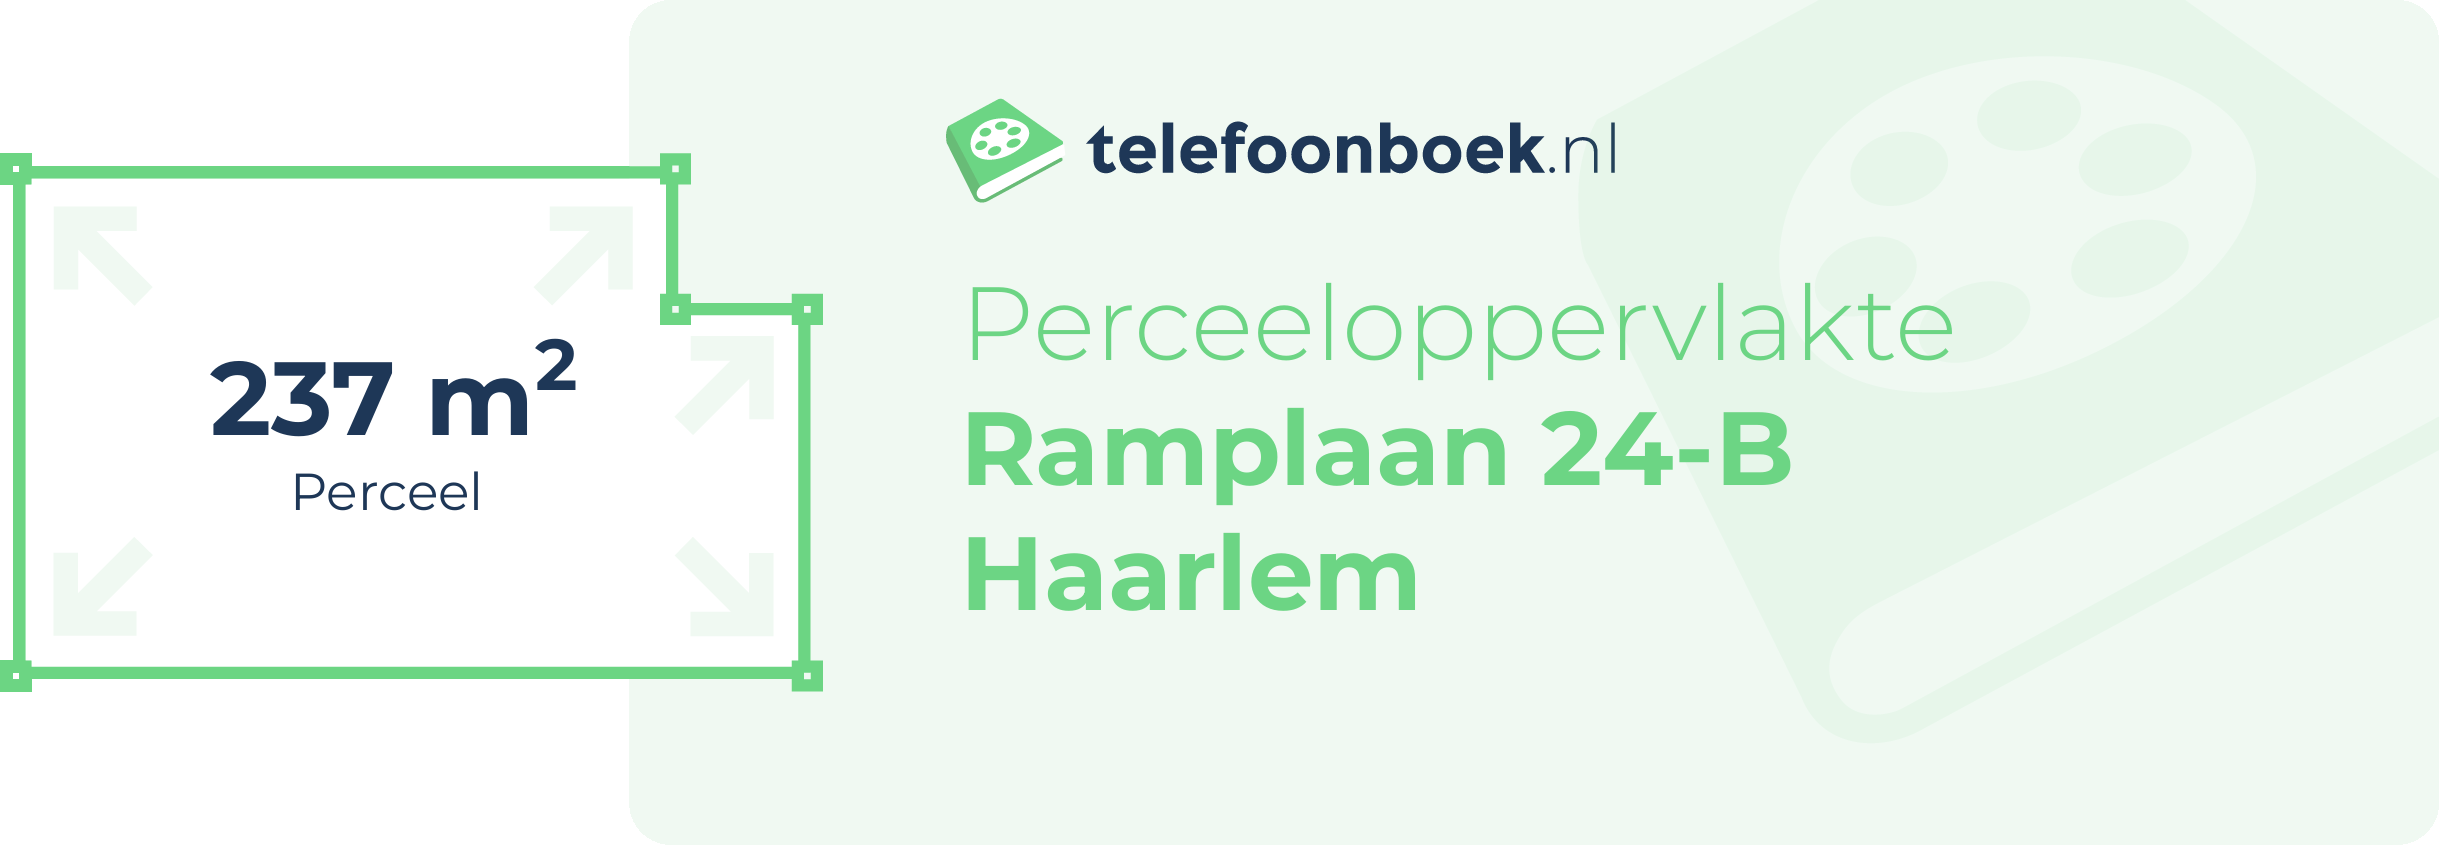 Perceeloppervlakte Ramplaan 24-B Haarlem